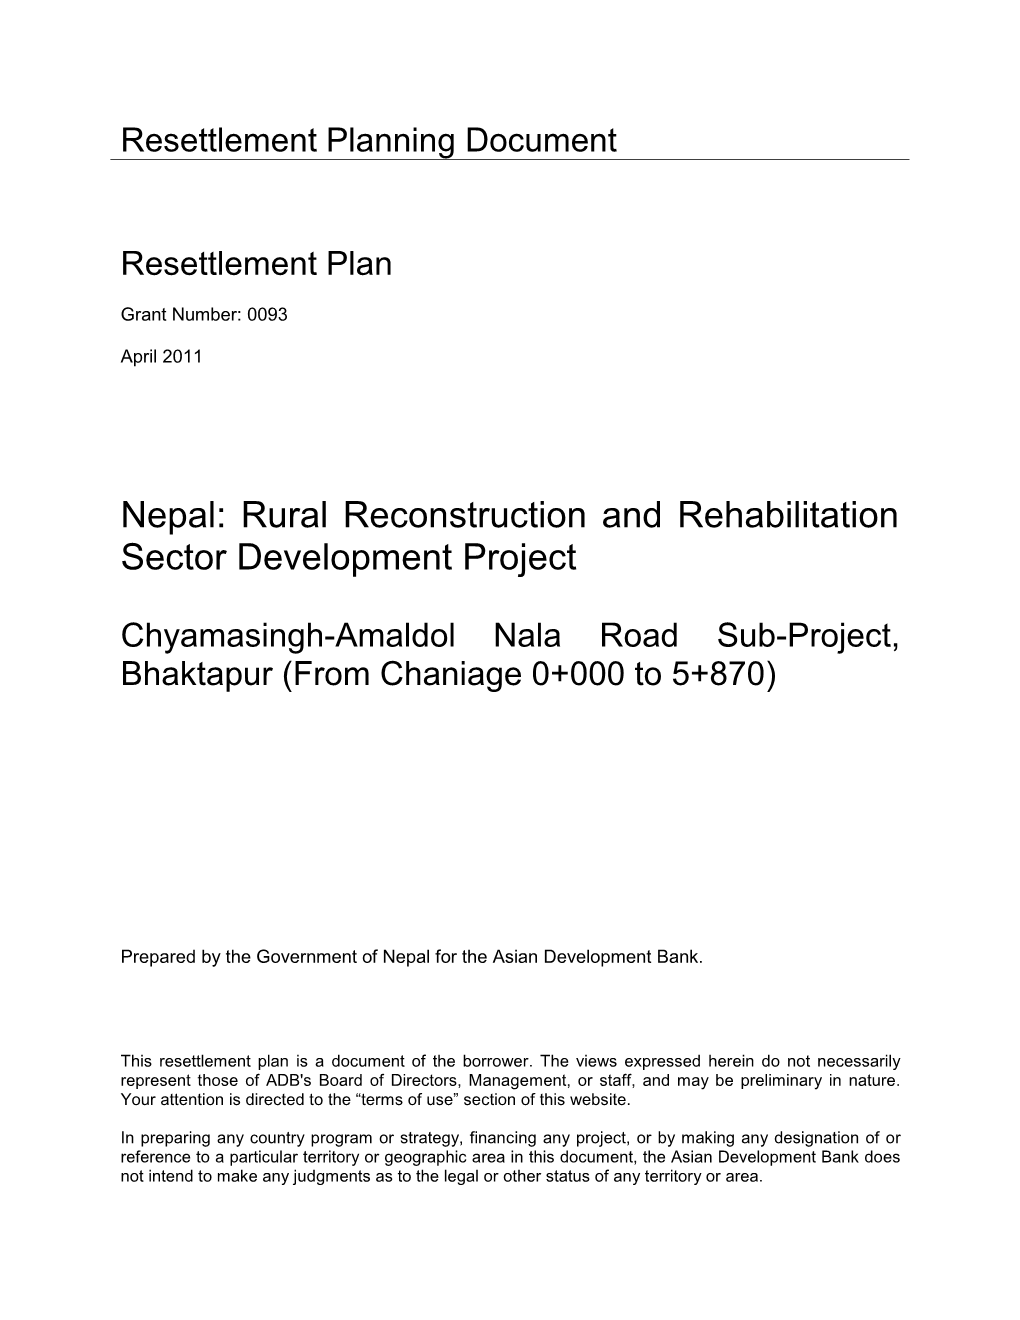 Chyamasingh-Amaldol Nala Road Sub-Project Resettlement Plan